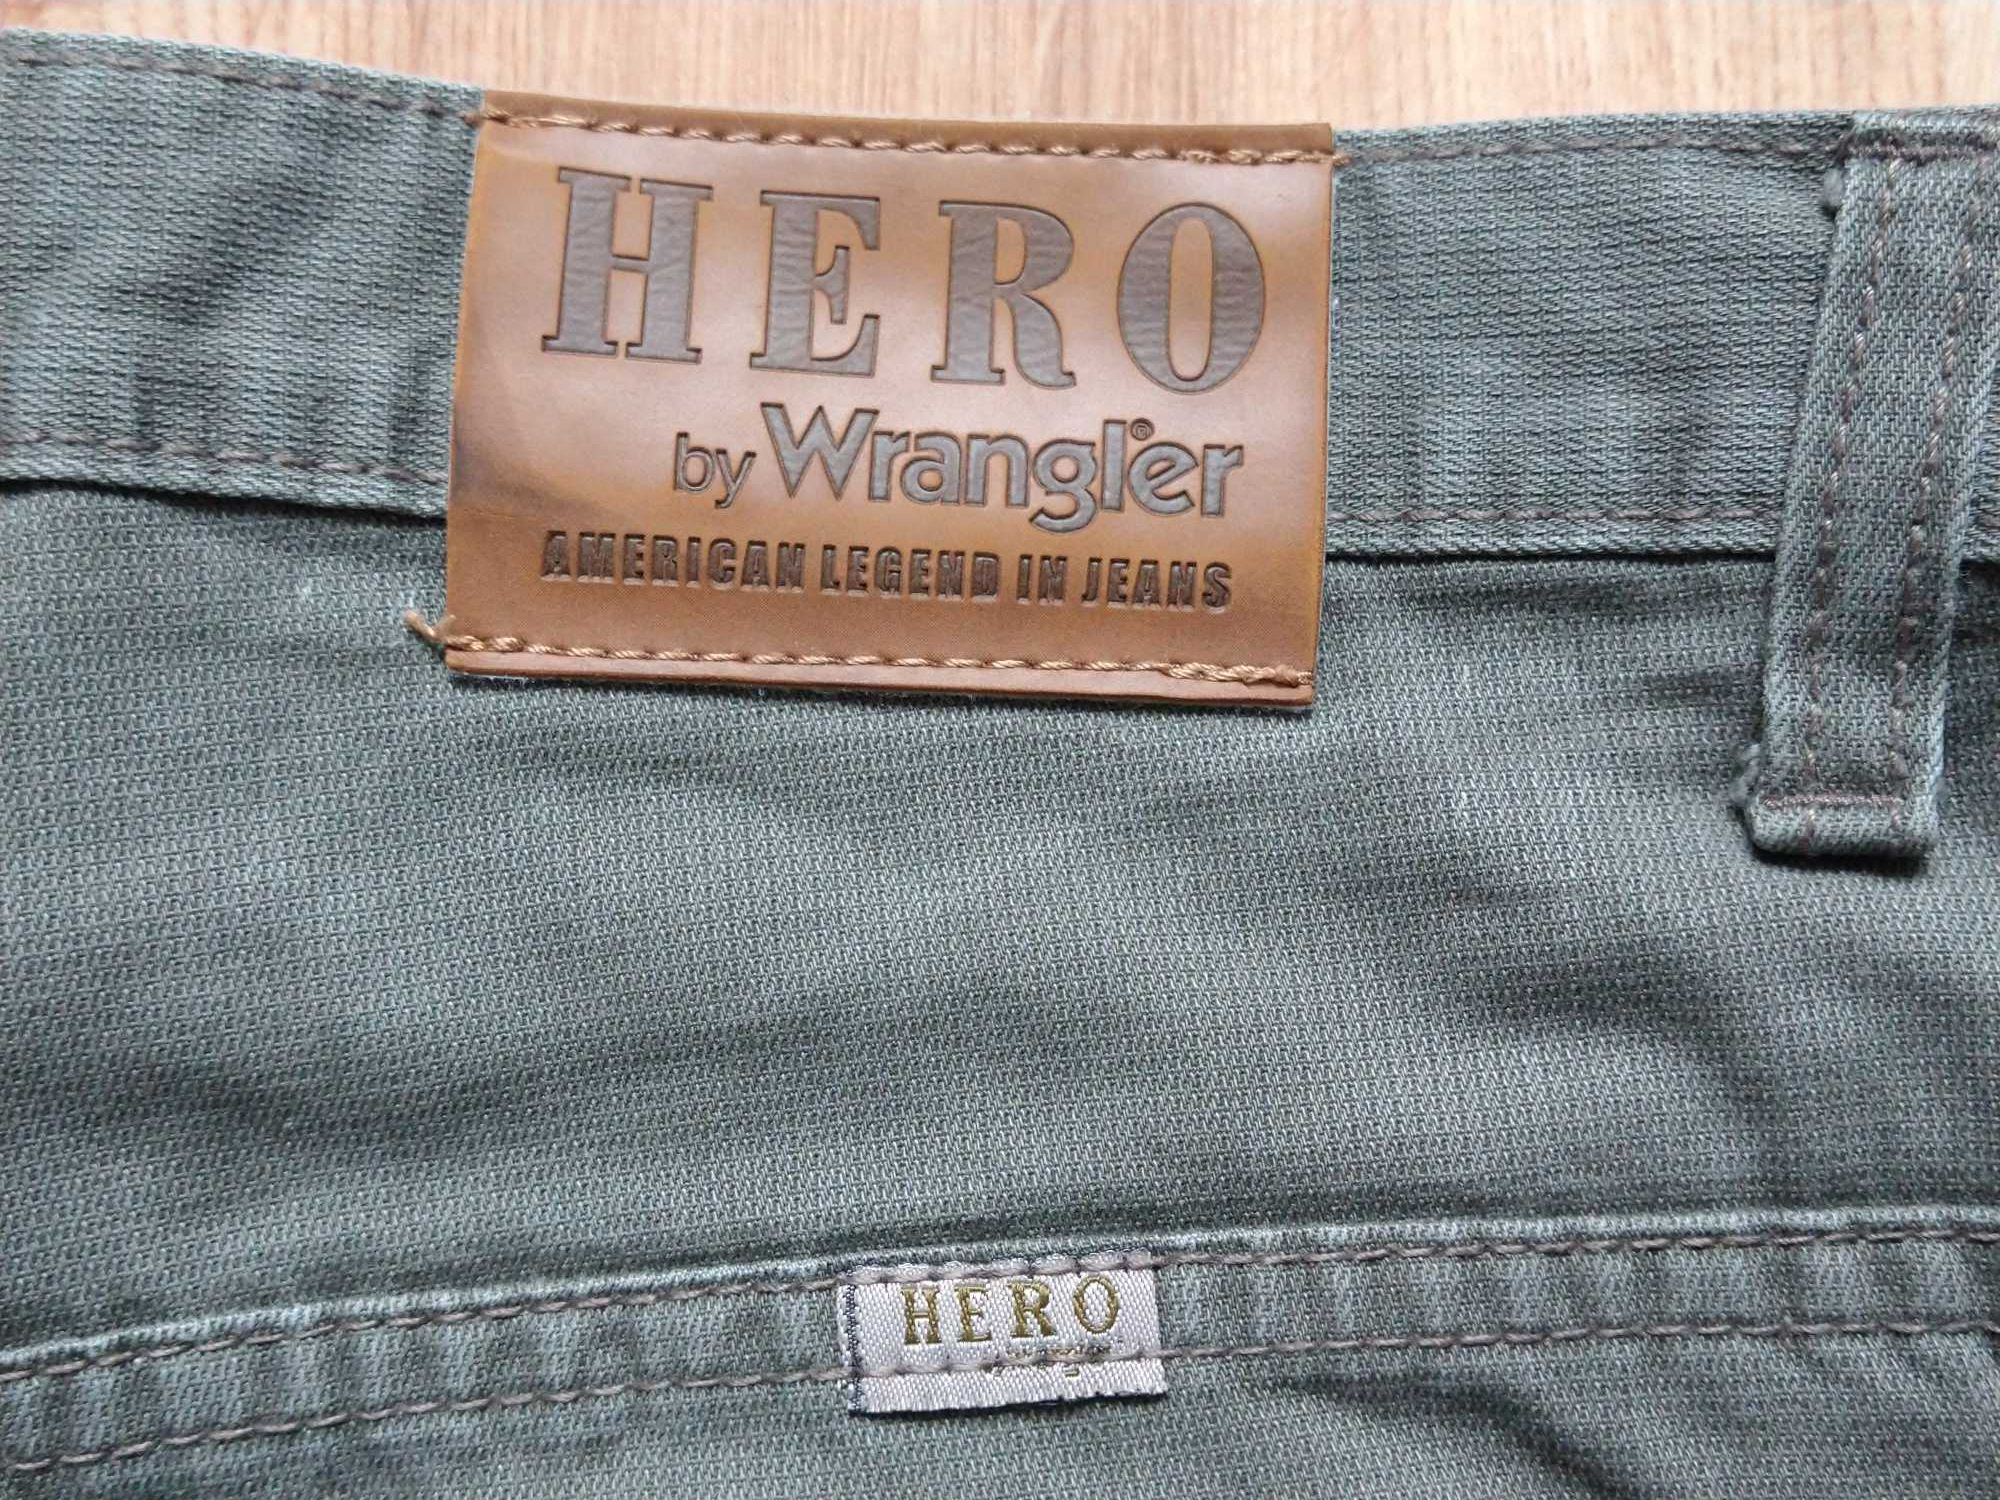 Spodnie Wrangler Hero . Używane. Męskie.